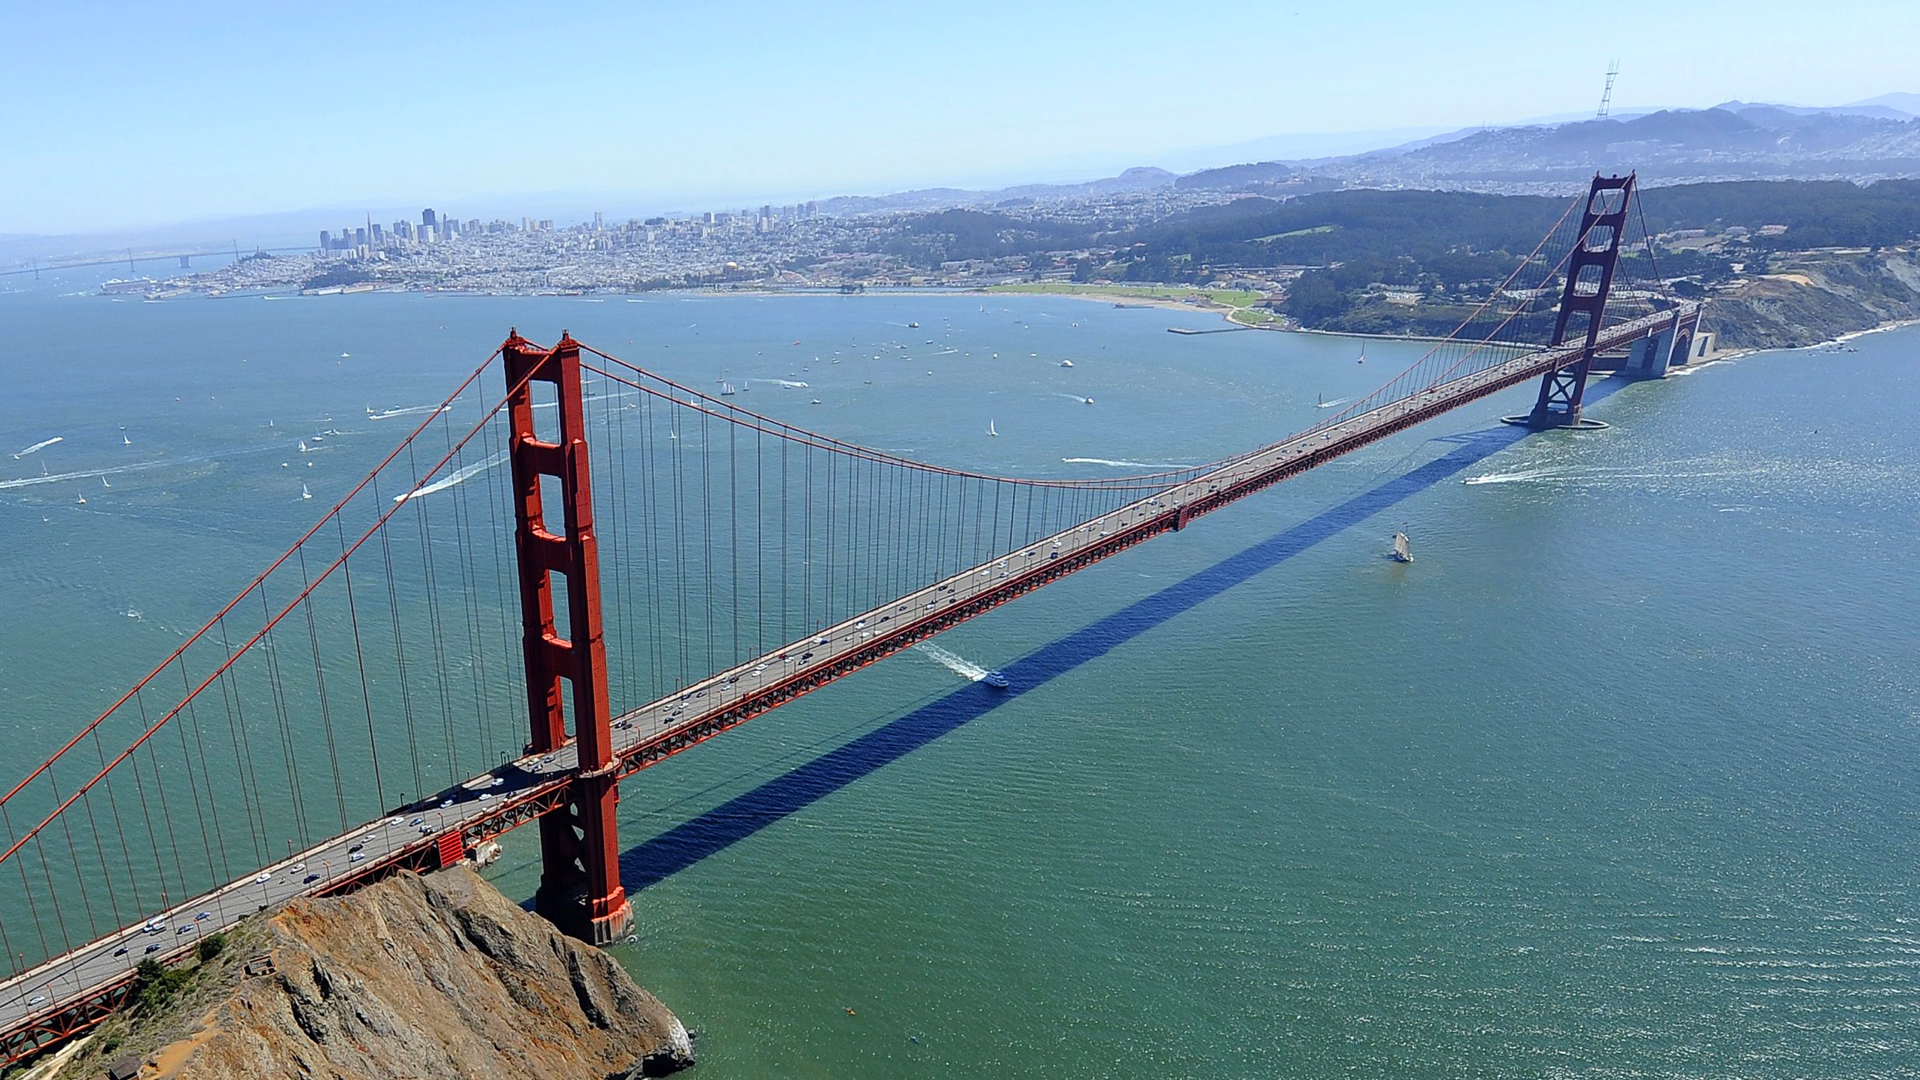 Golden-Gate-Bridge und die San Francisco Bay Area | picture alliance / dpa